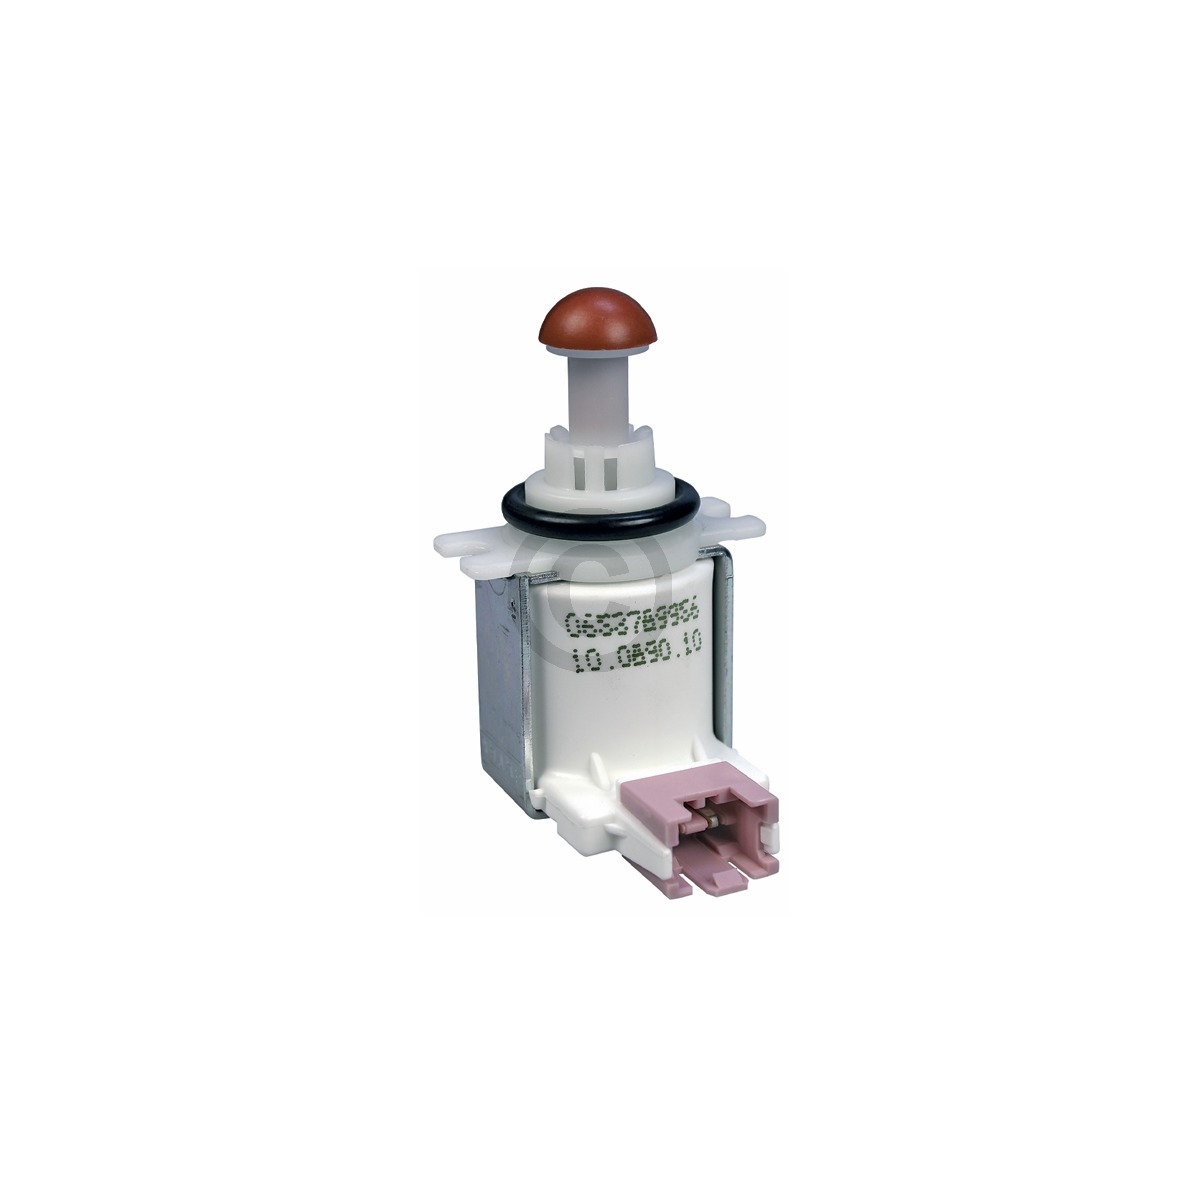 ORIGINAL Magnetventil 90915.01 für Siemens Bosch Neff Ventil Zulaufventil S 